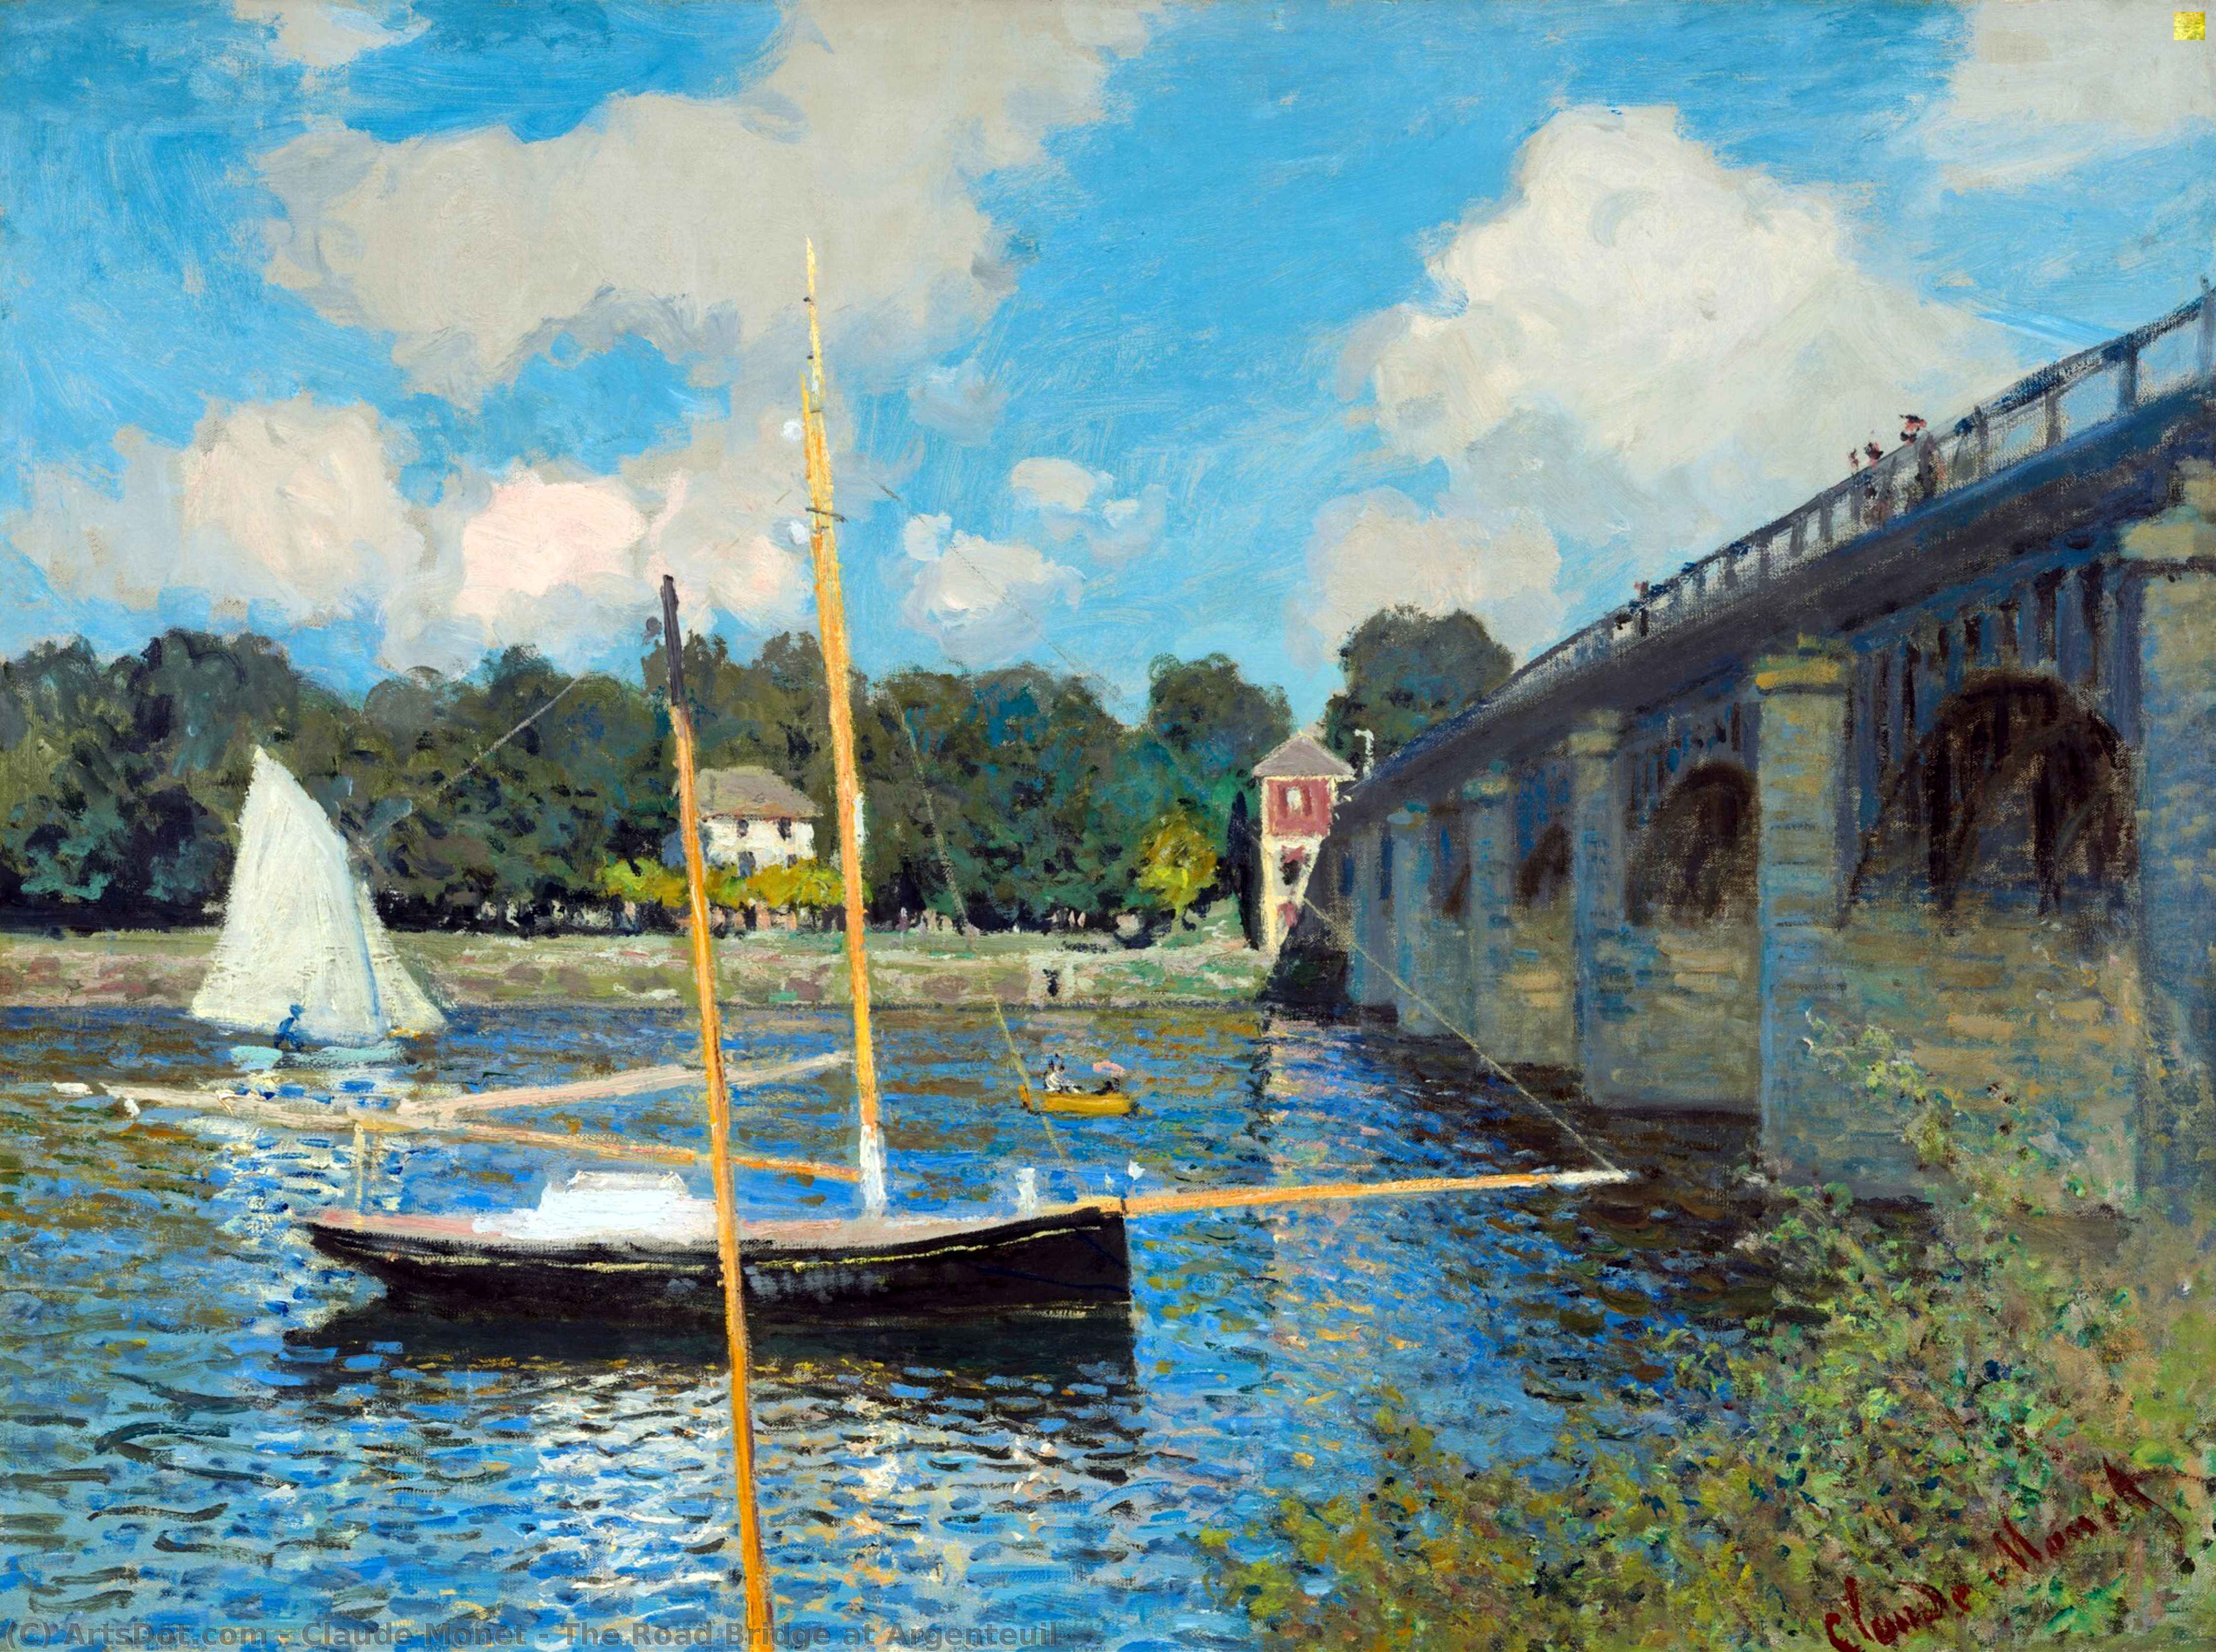 Comprar Reproducciones De Arte Del Museo El puente de carretera en Argenteuil, 1874 de Claude Monet (1840-1926, France) | ArtsDot.com